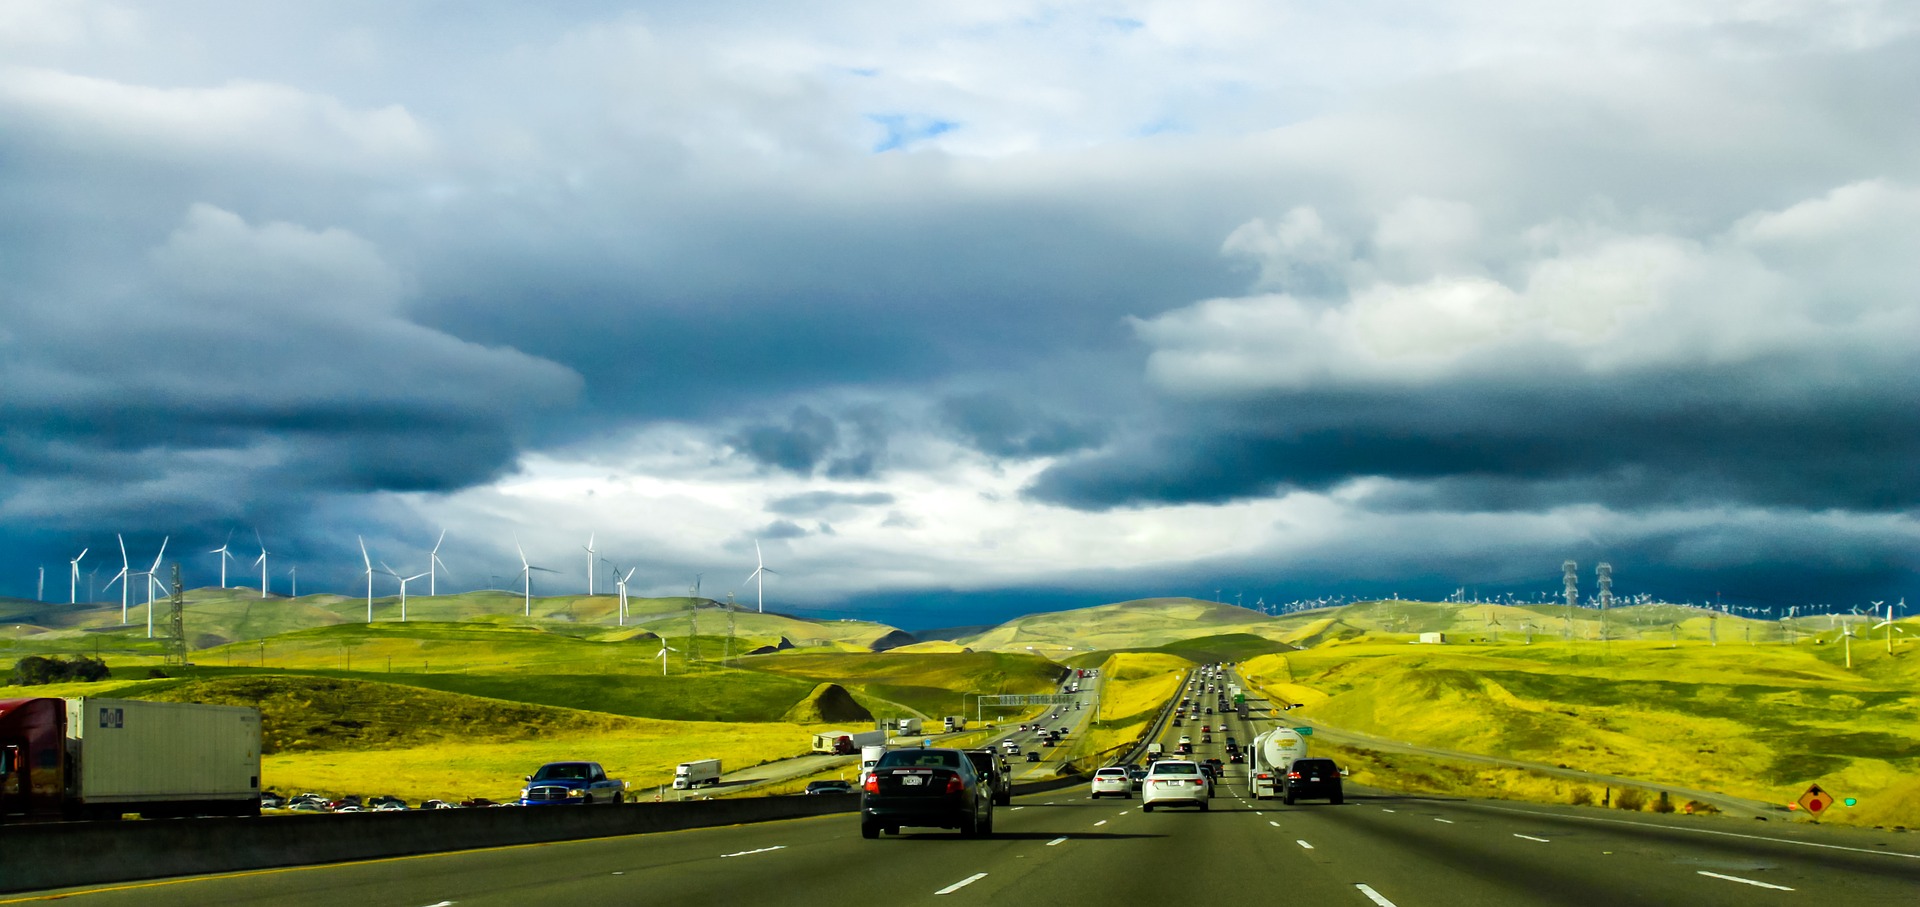 Tungt trafikerad väg i grönt landskap omgivet av vindkraftverk